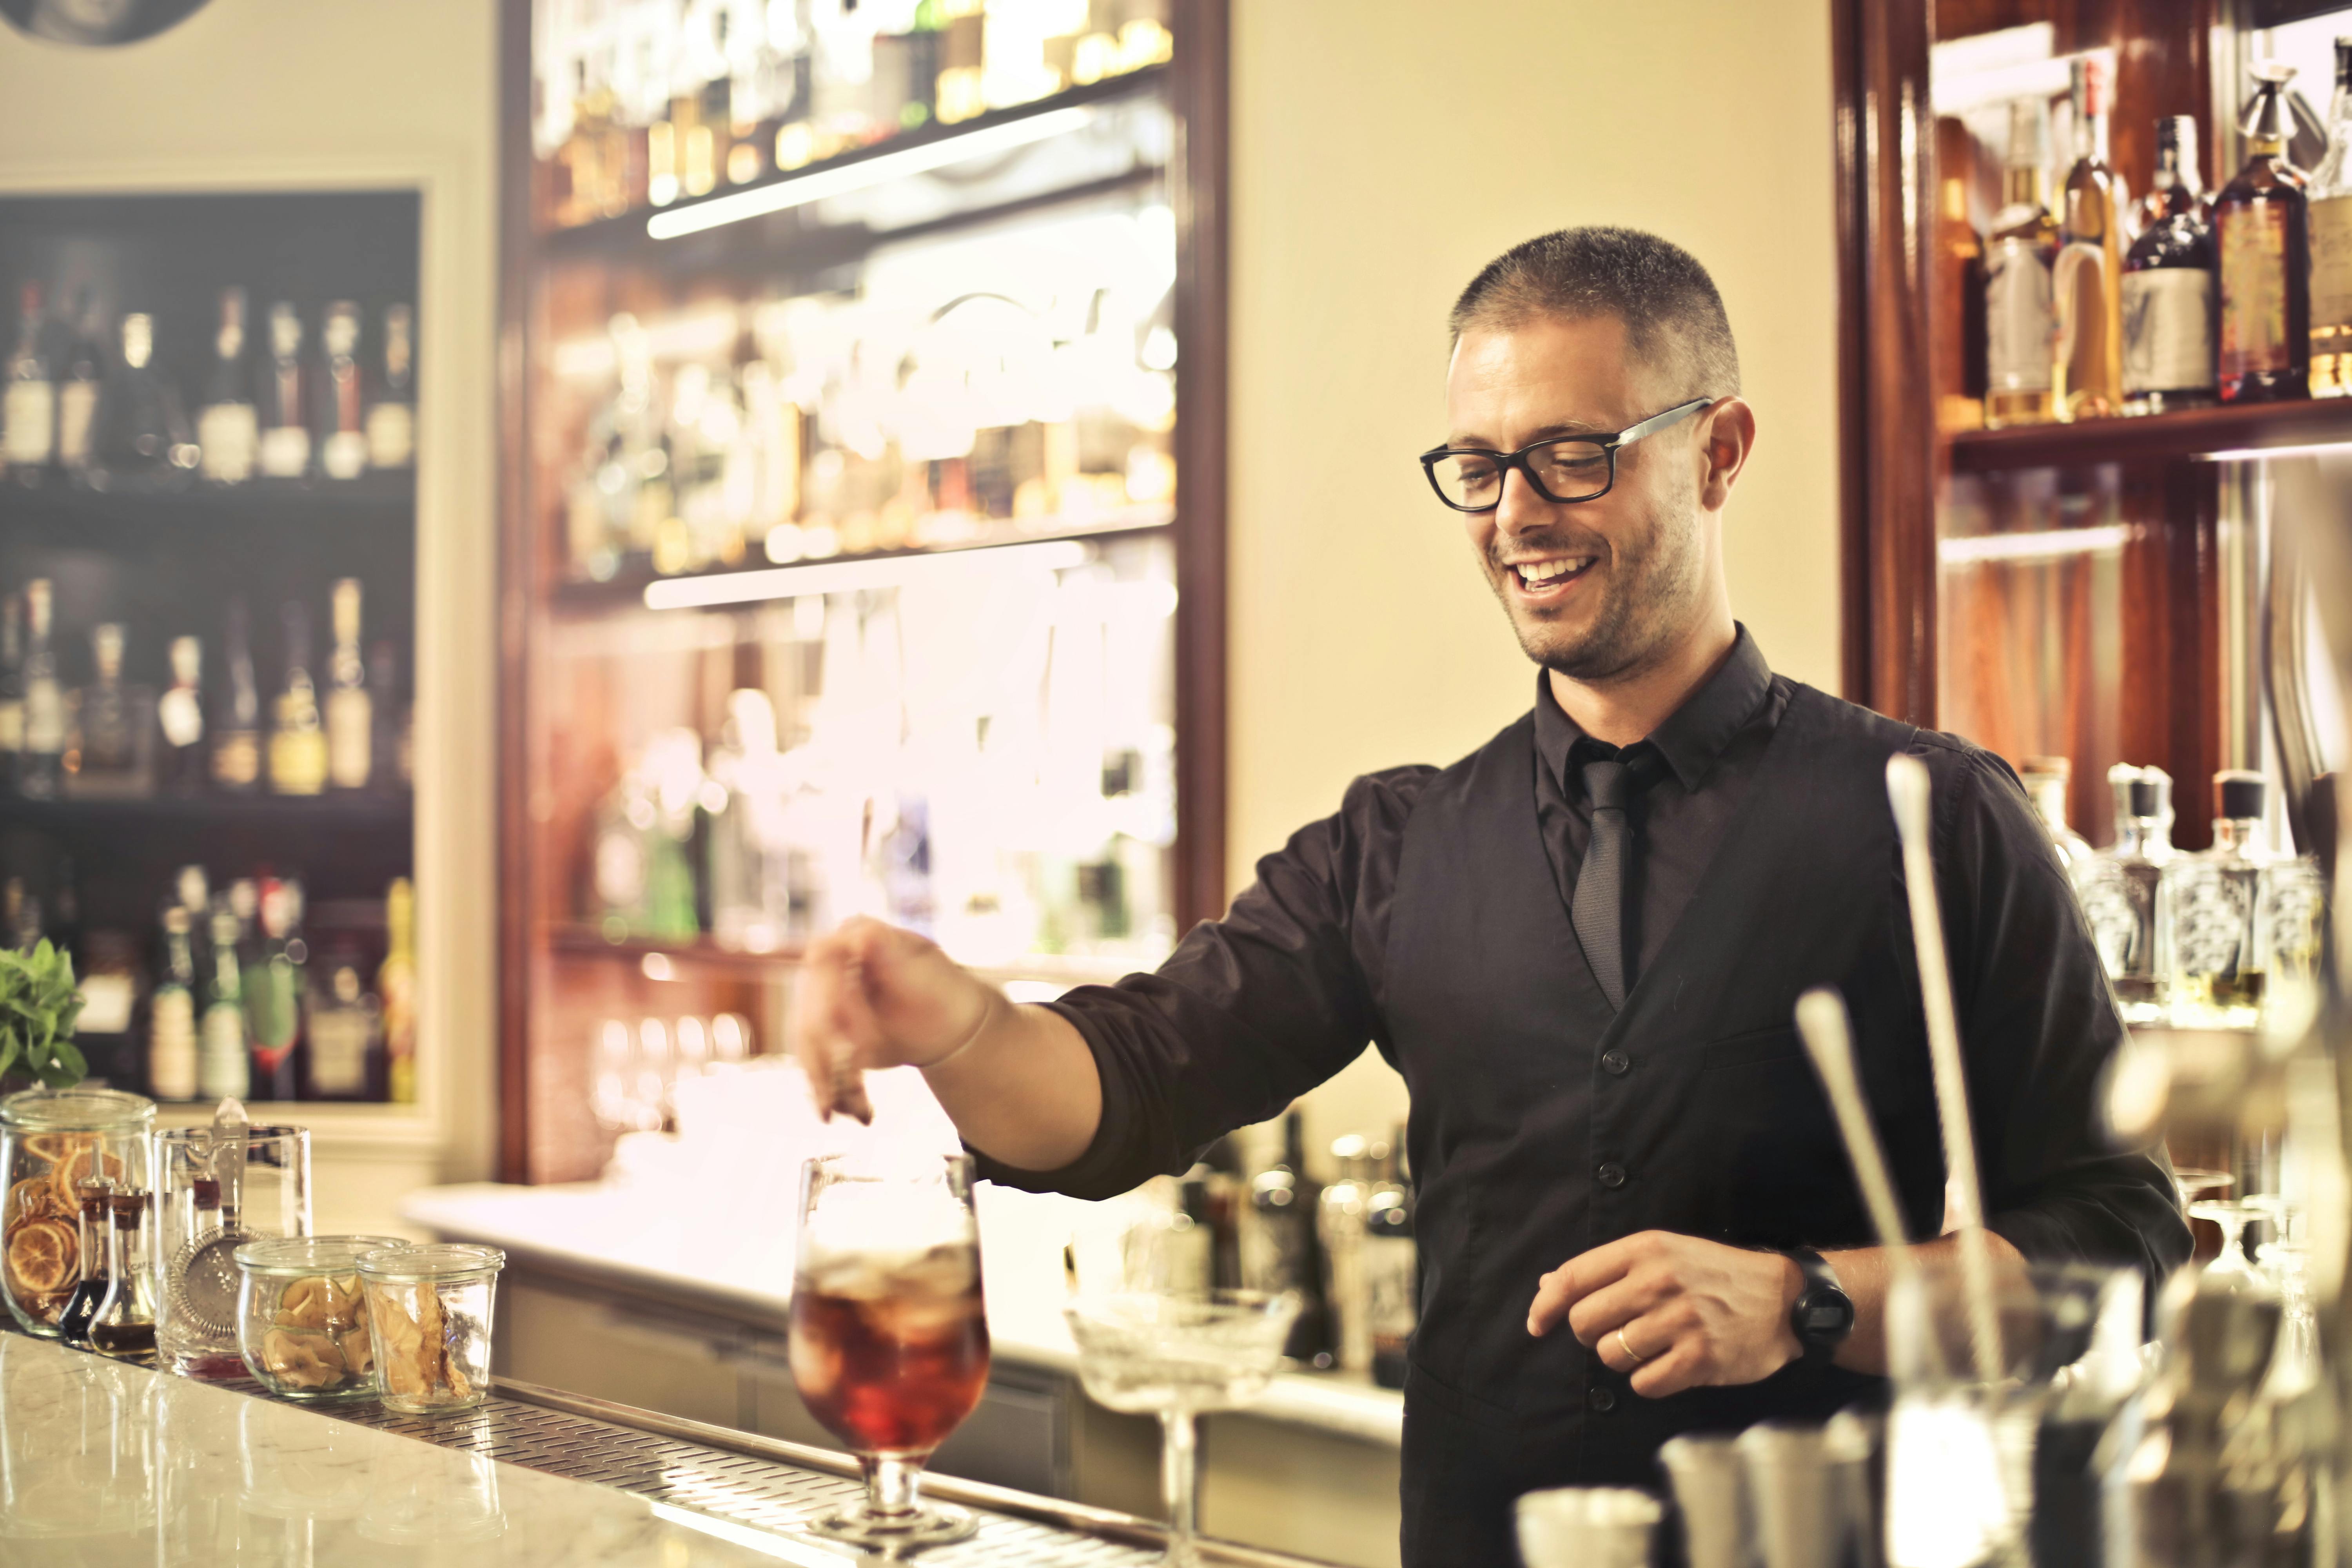 Un serveur souriant préparant une boisson | Source : Pexels